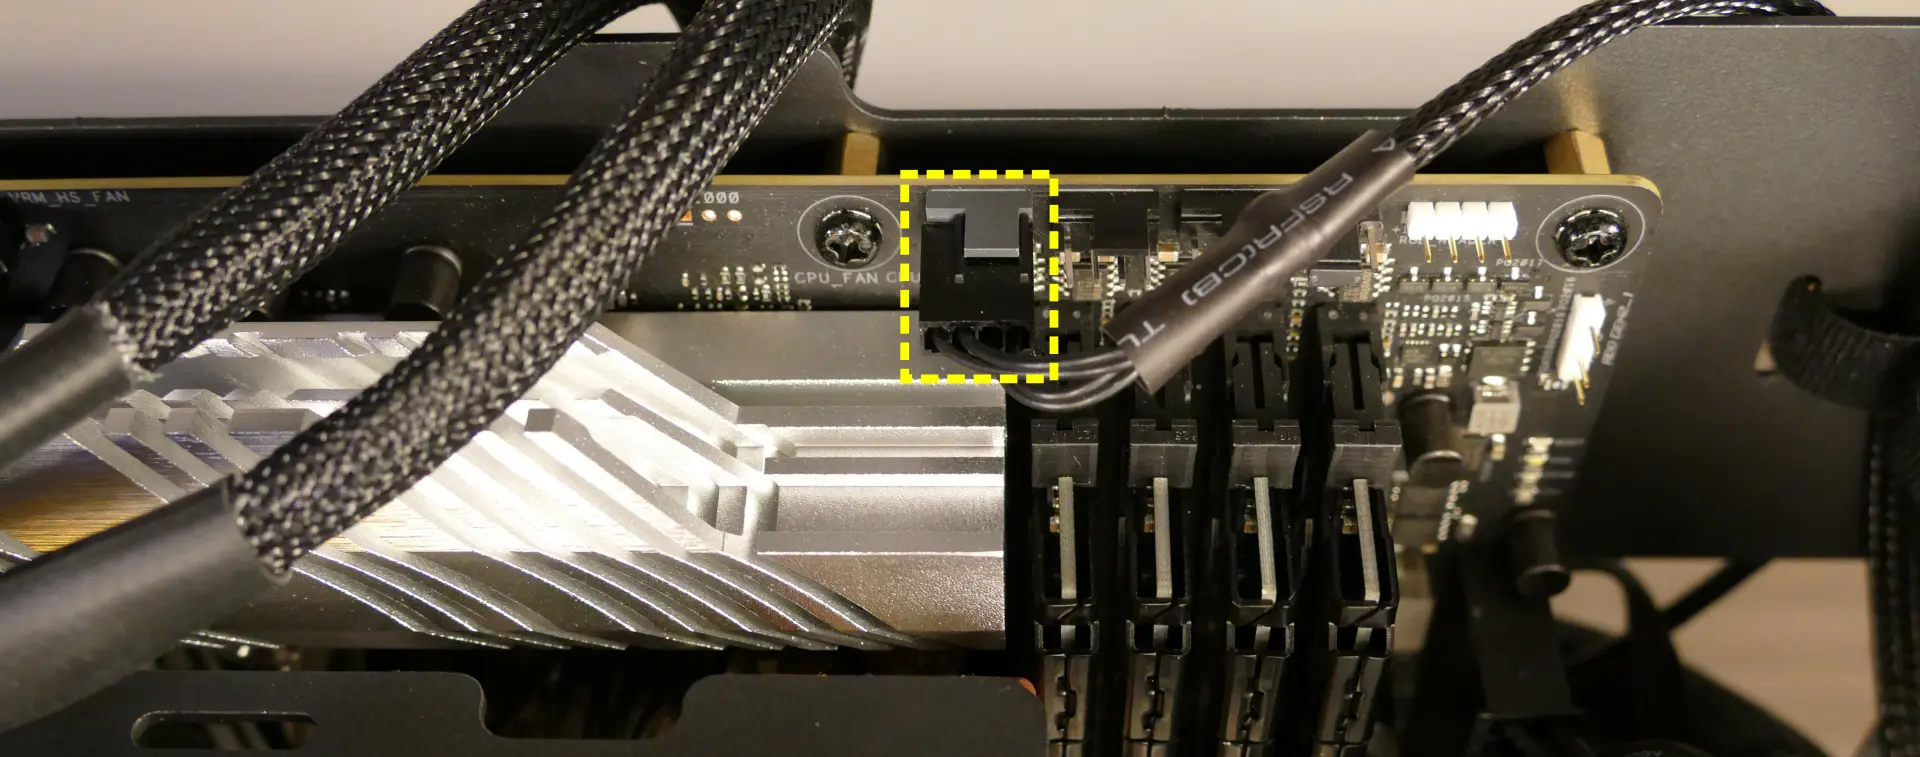 CPU fan header on motherboard